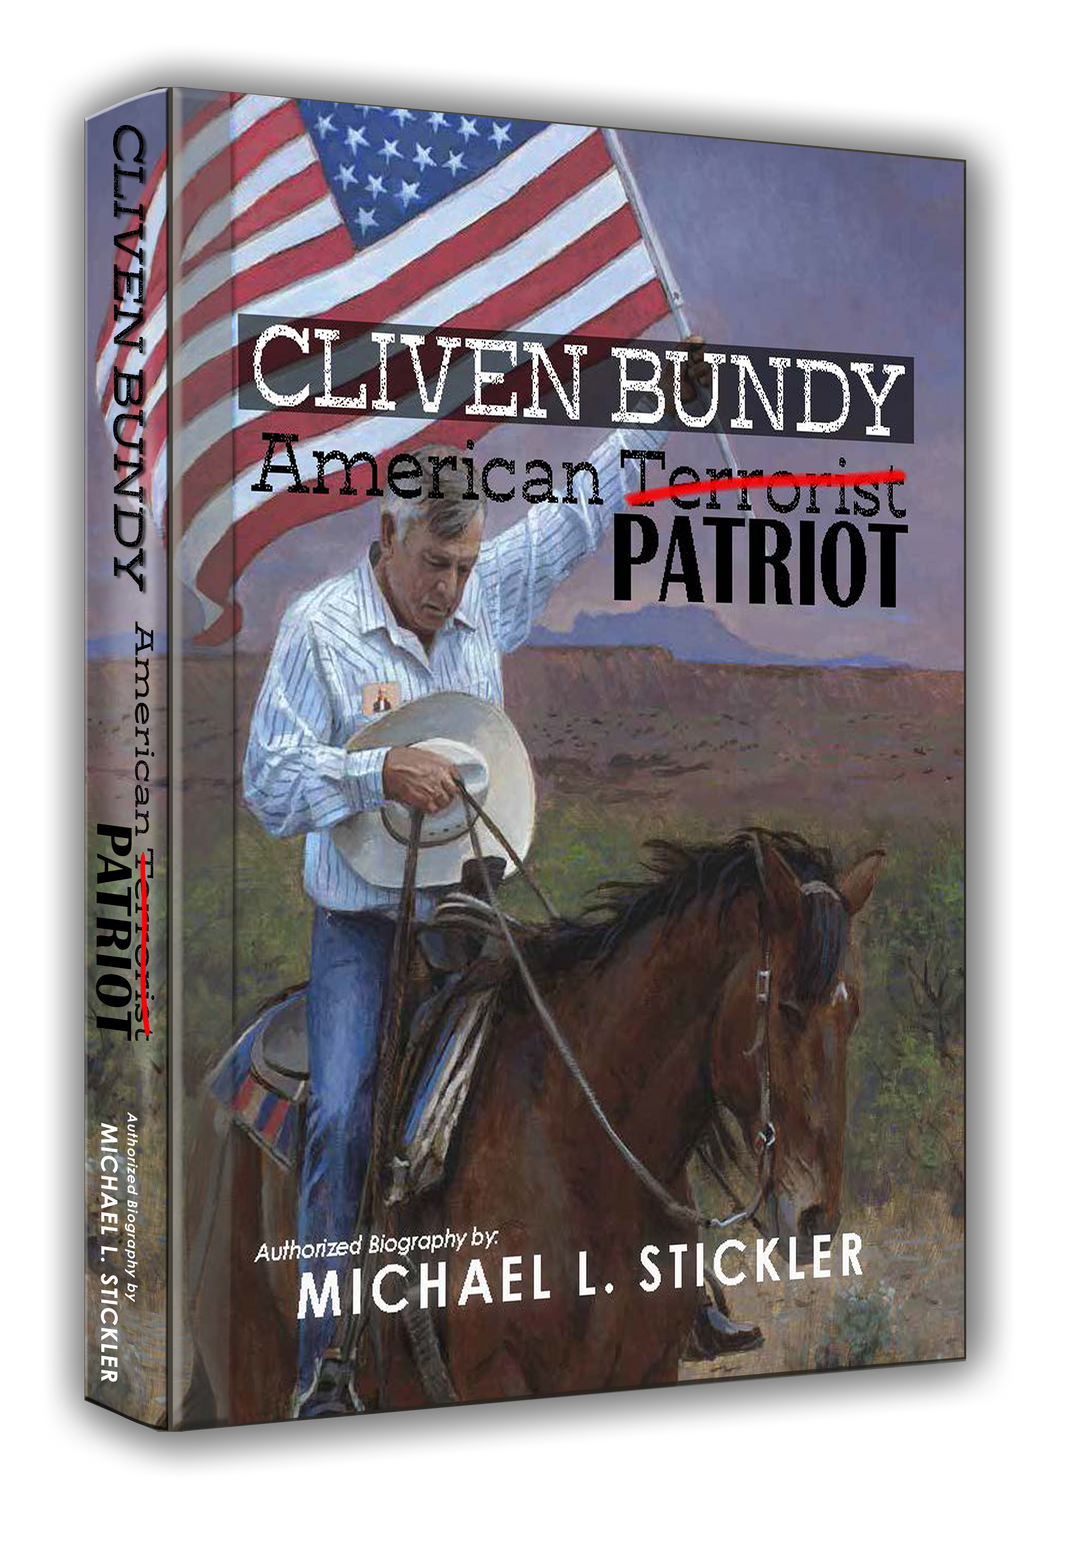 Cliven Bundy American Patriot - Next Edition